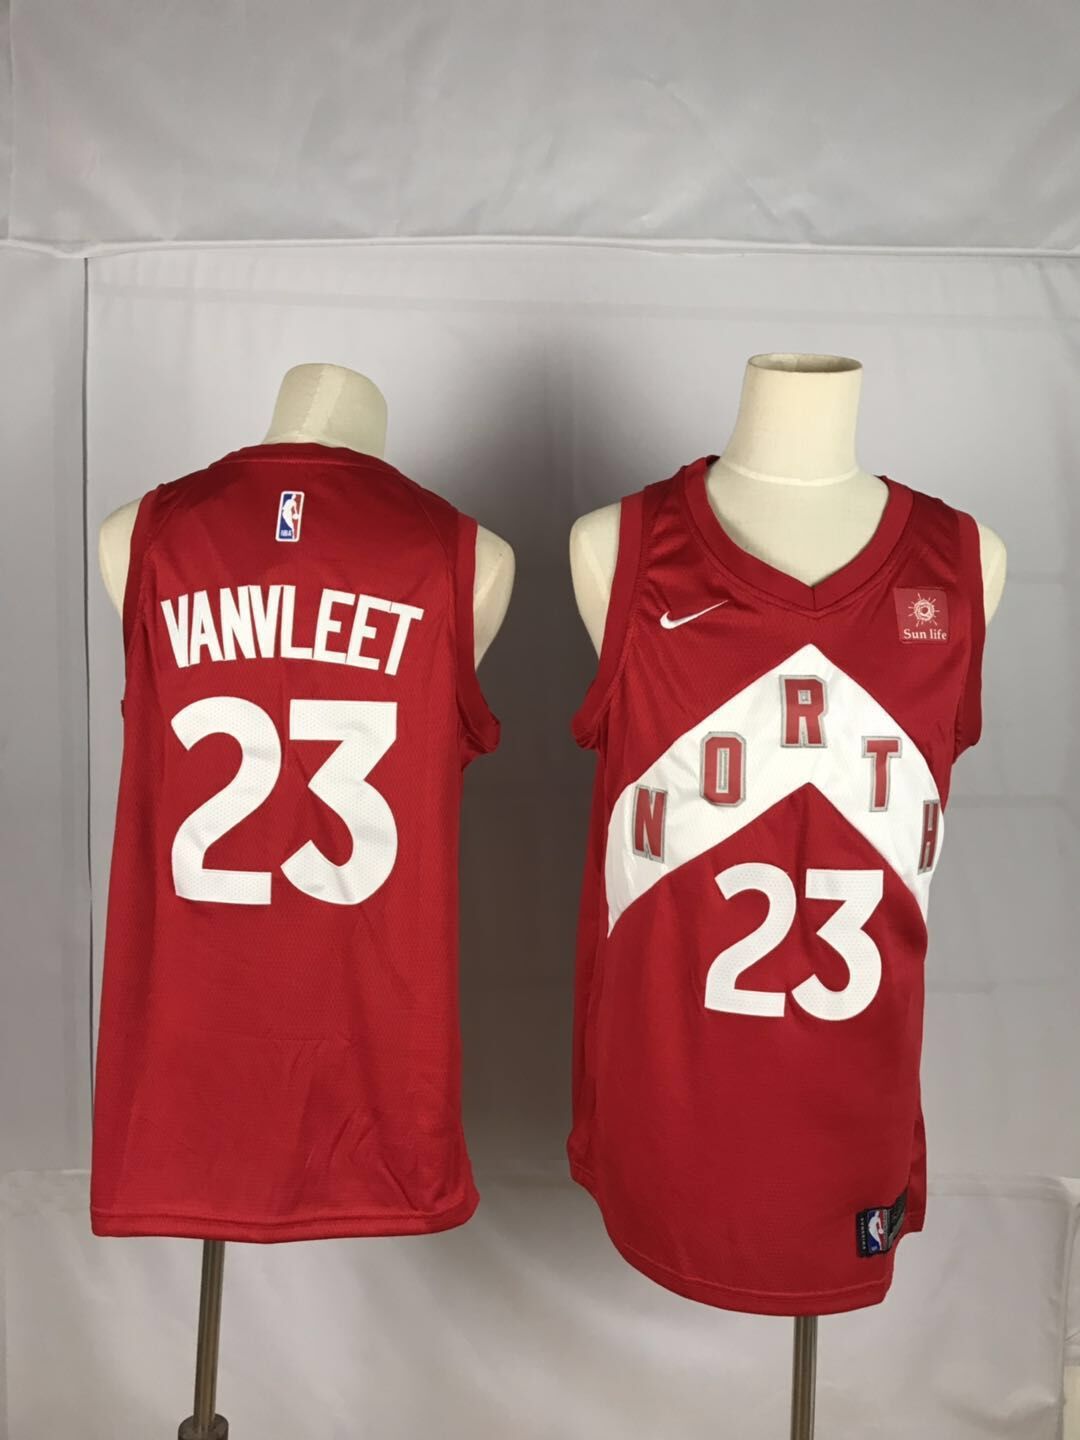 2019 Men Toronto Raptors #23 Vanvleet red NBA Nike Jerseys->toronto raptors->NBA Jersey